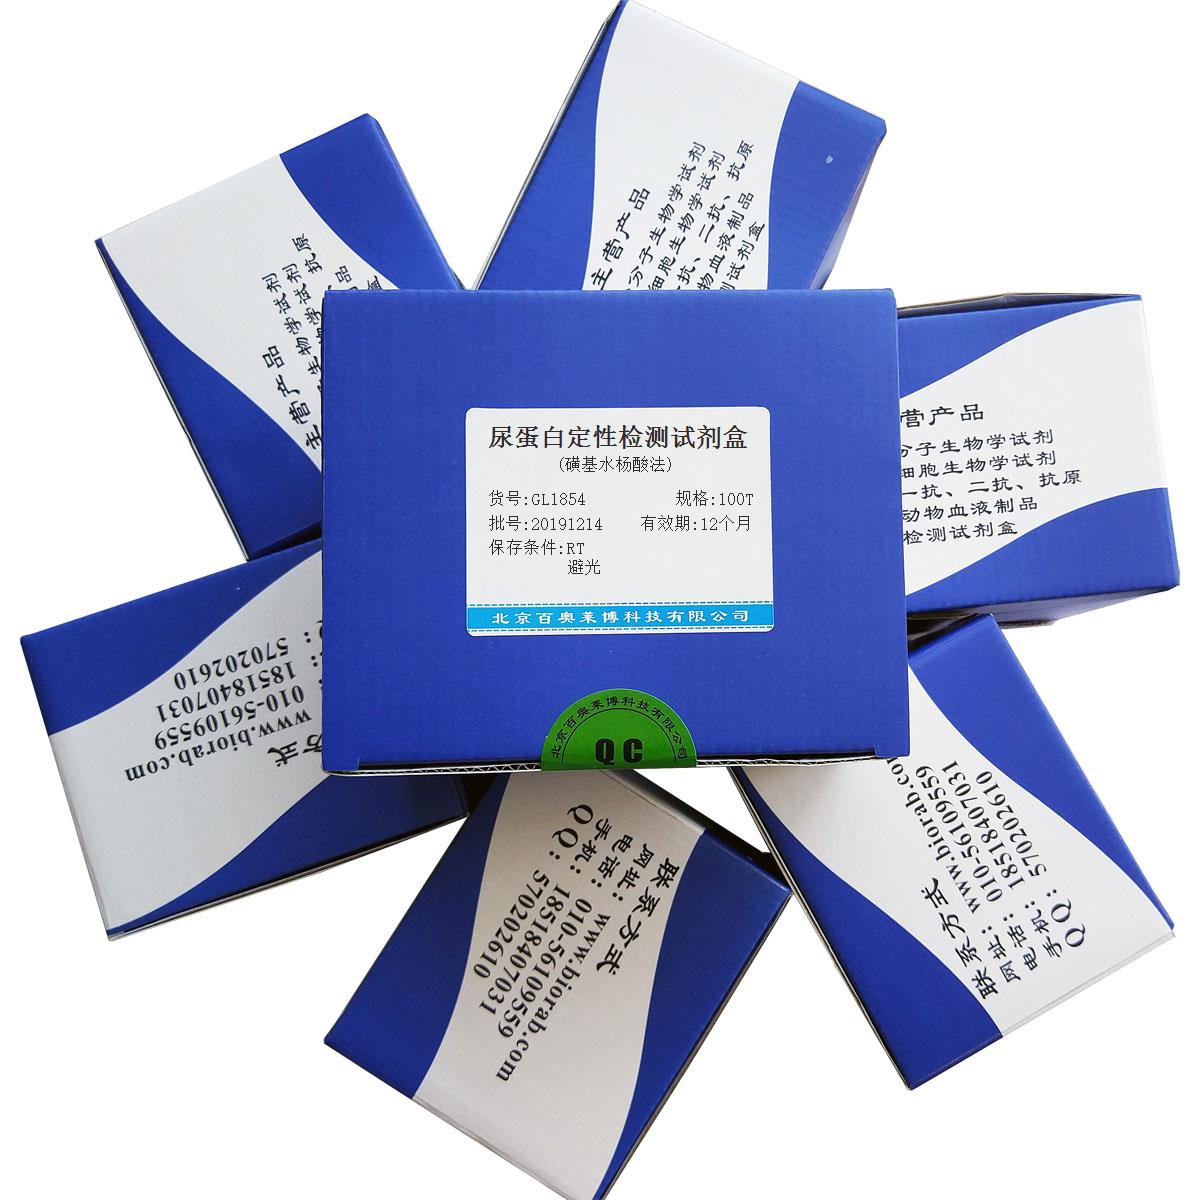 尿蛋白定性检测试剂盒(磺基水杨酸法)报价